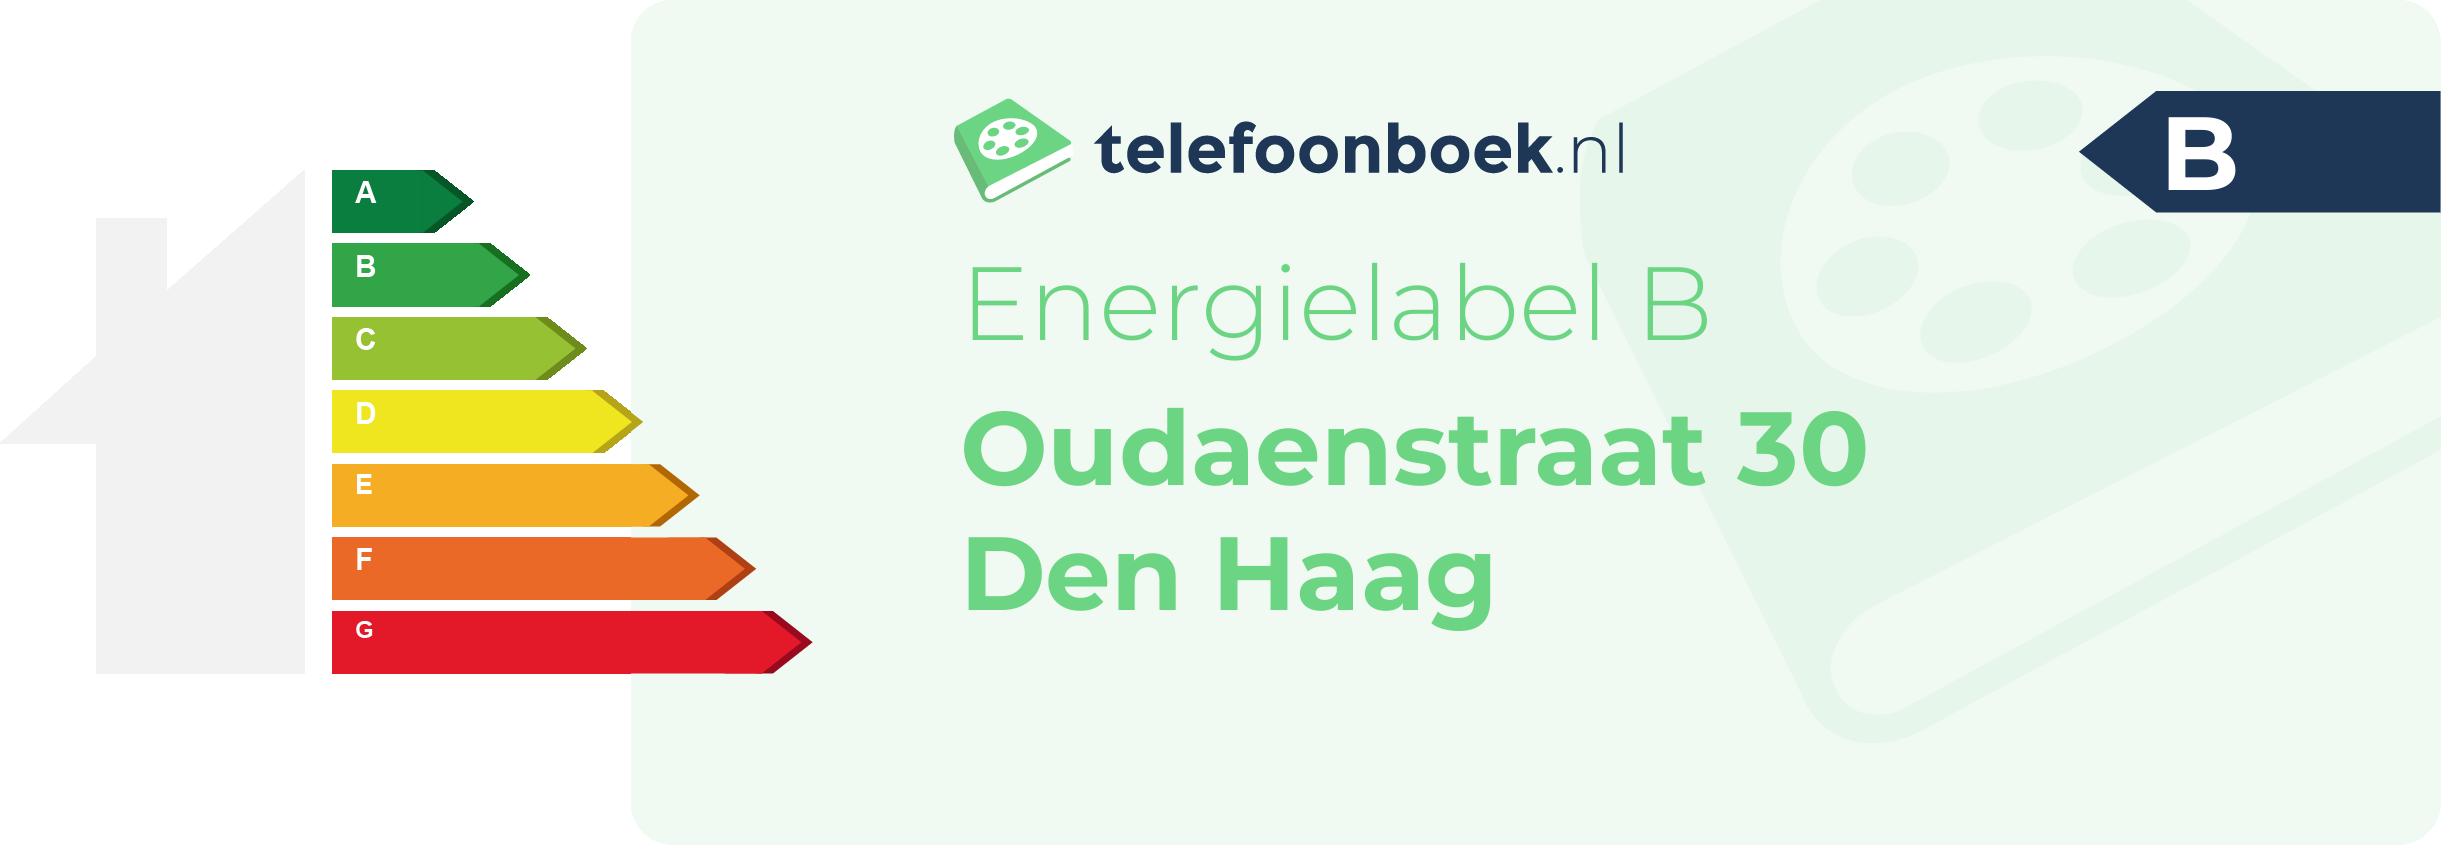 Energielabel Oudaenstraat 30 Den Haag